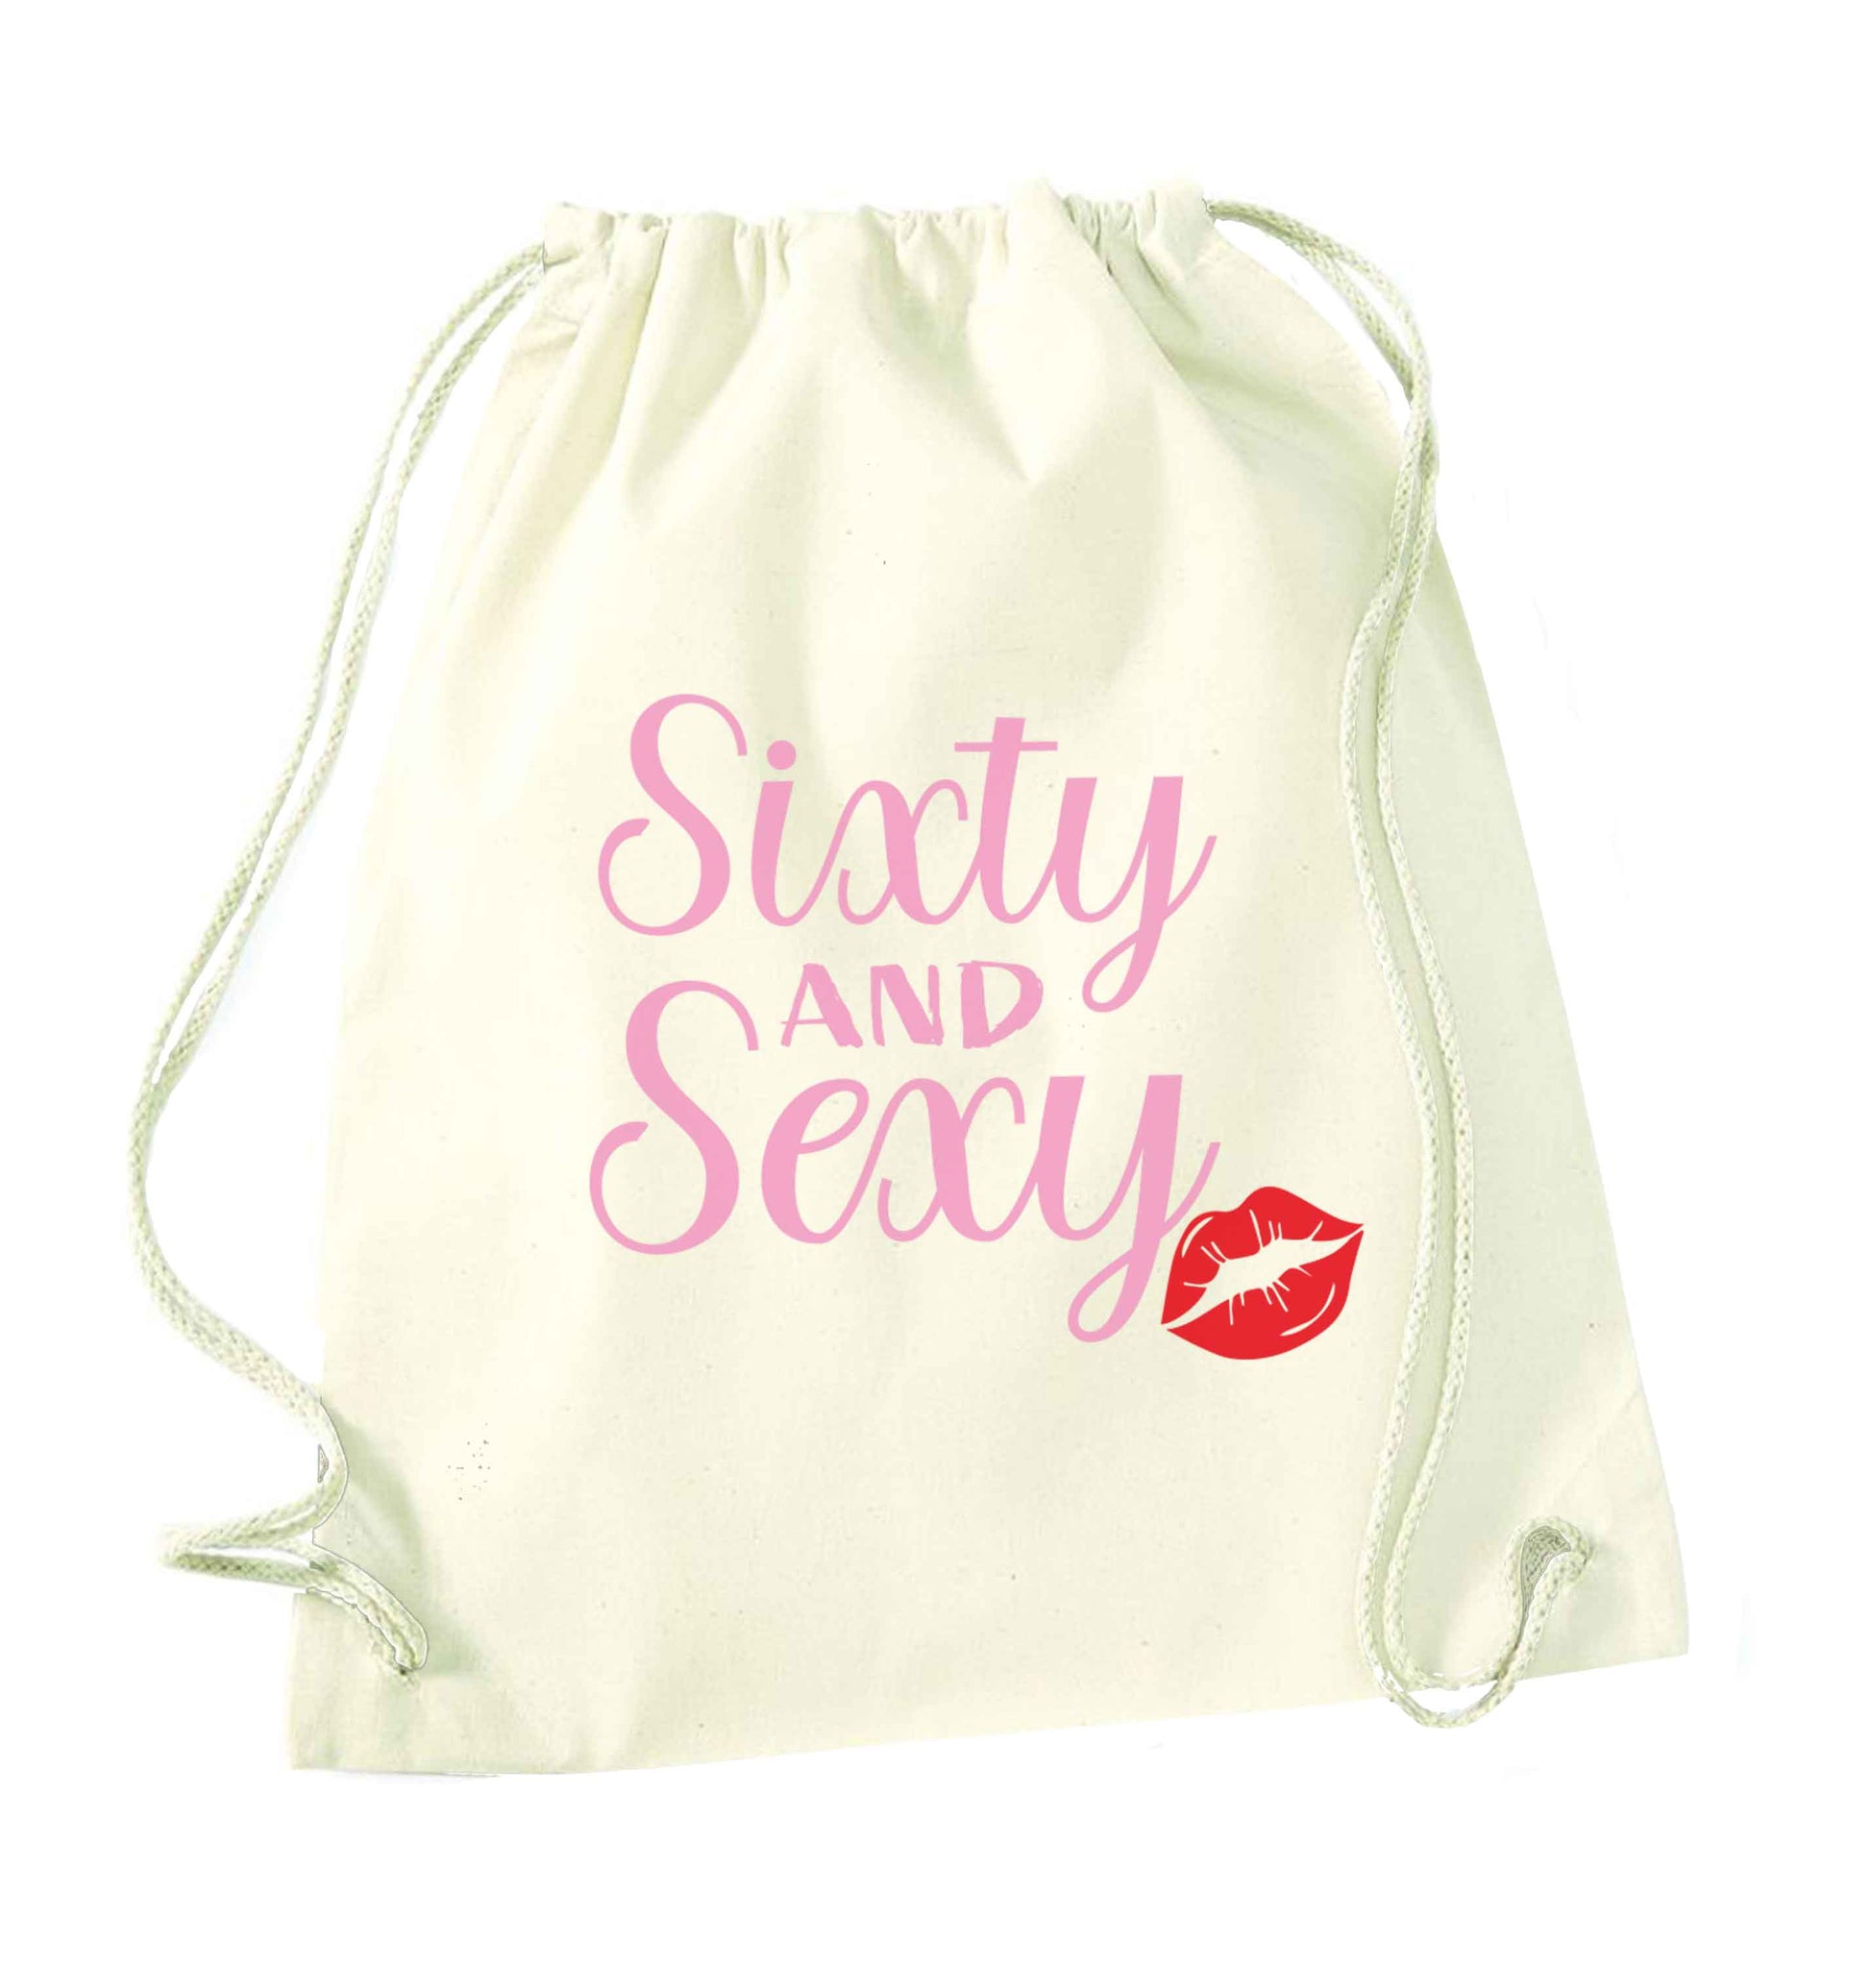 Sixty and sexy natural drawstring bag